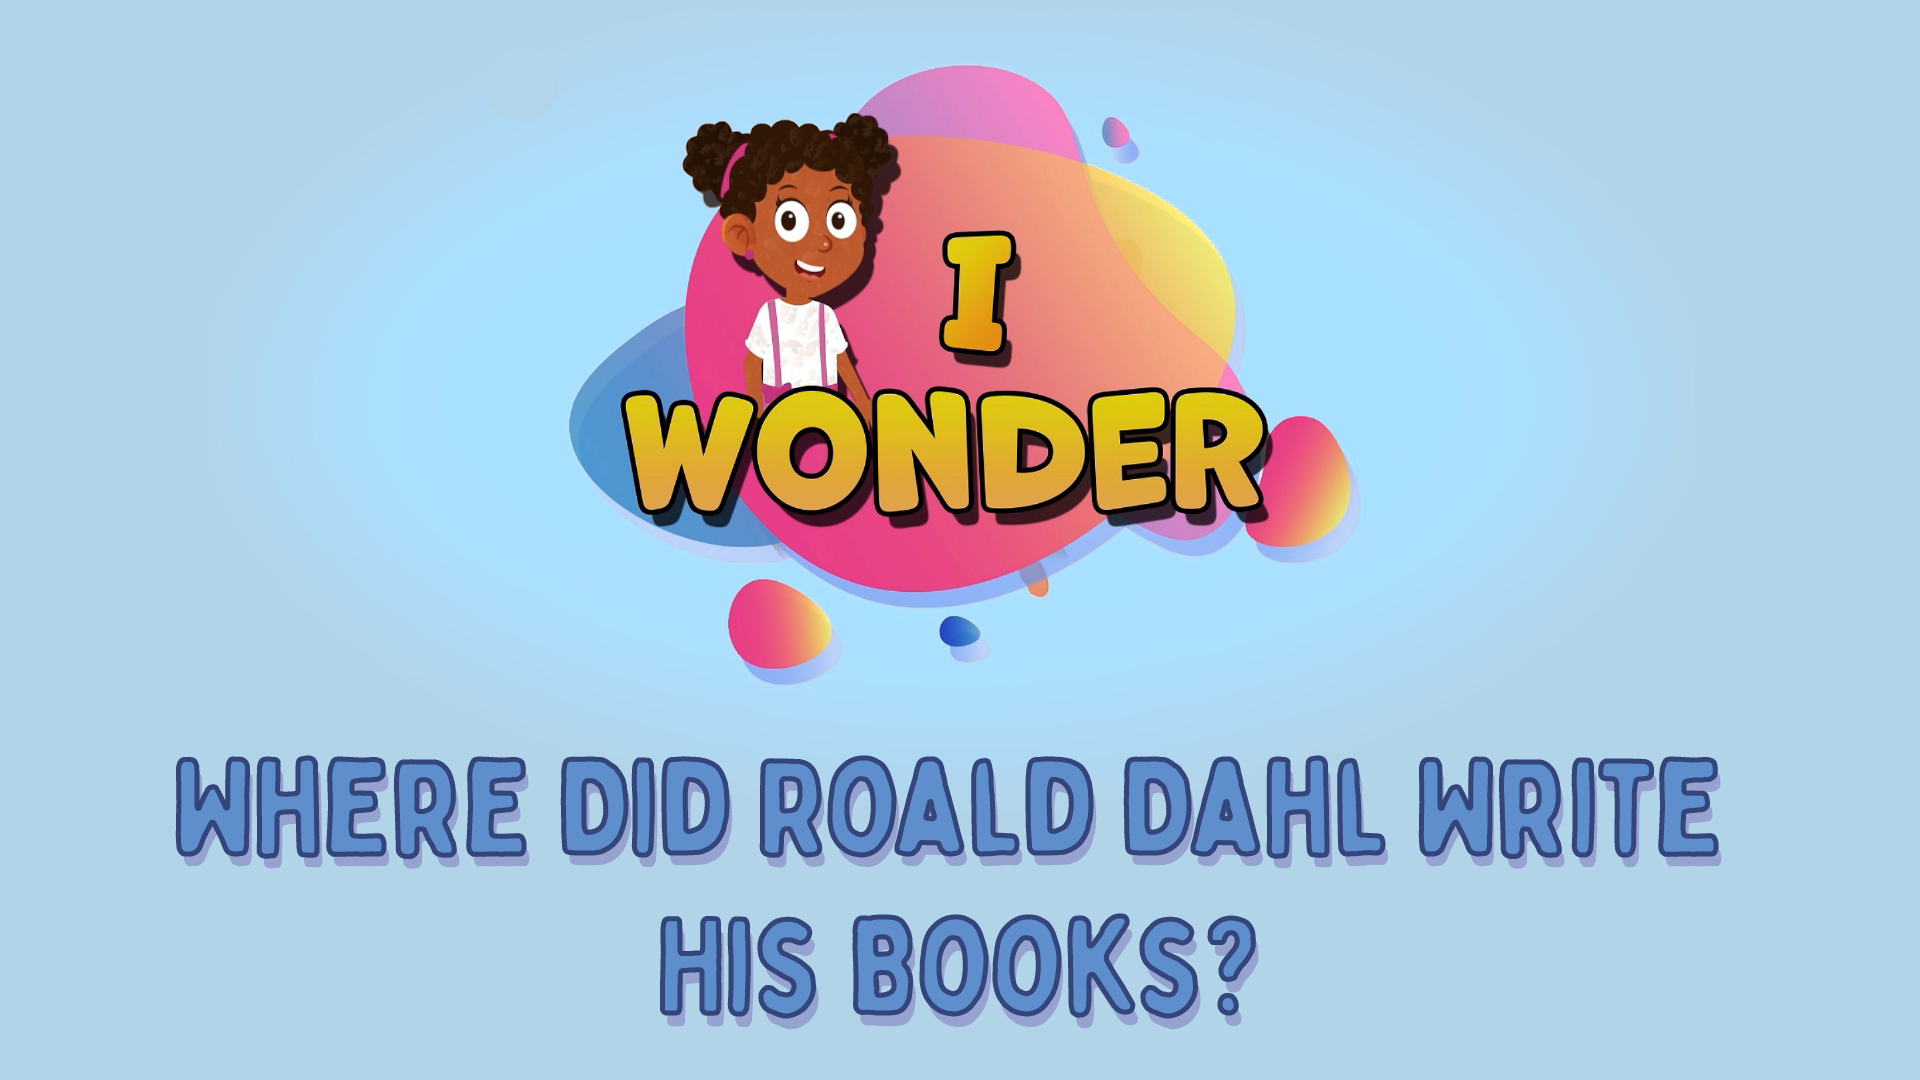 Where Did Roald Dahl Write His Books?